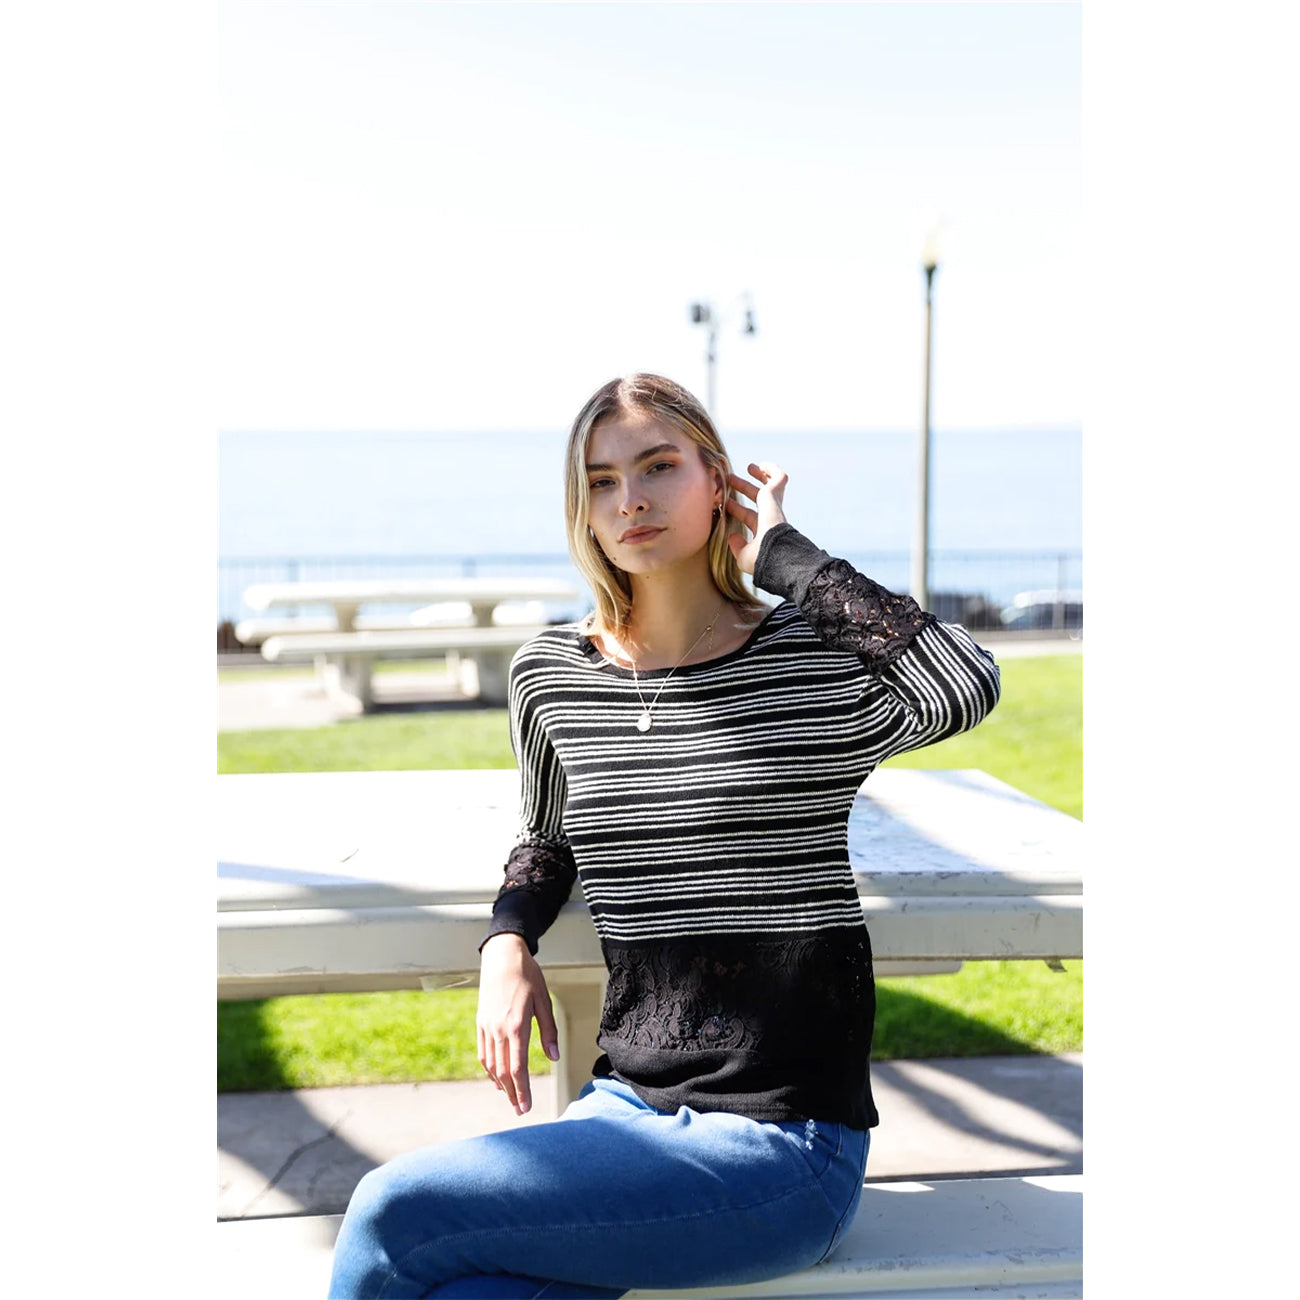 Striped Glitter Long Sleeve Women's Sweater - Black